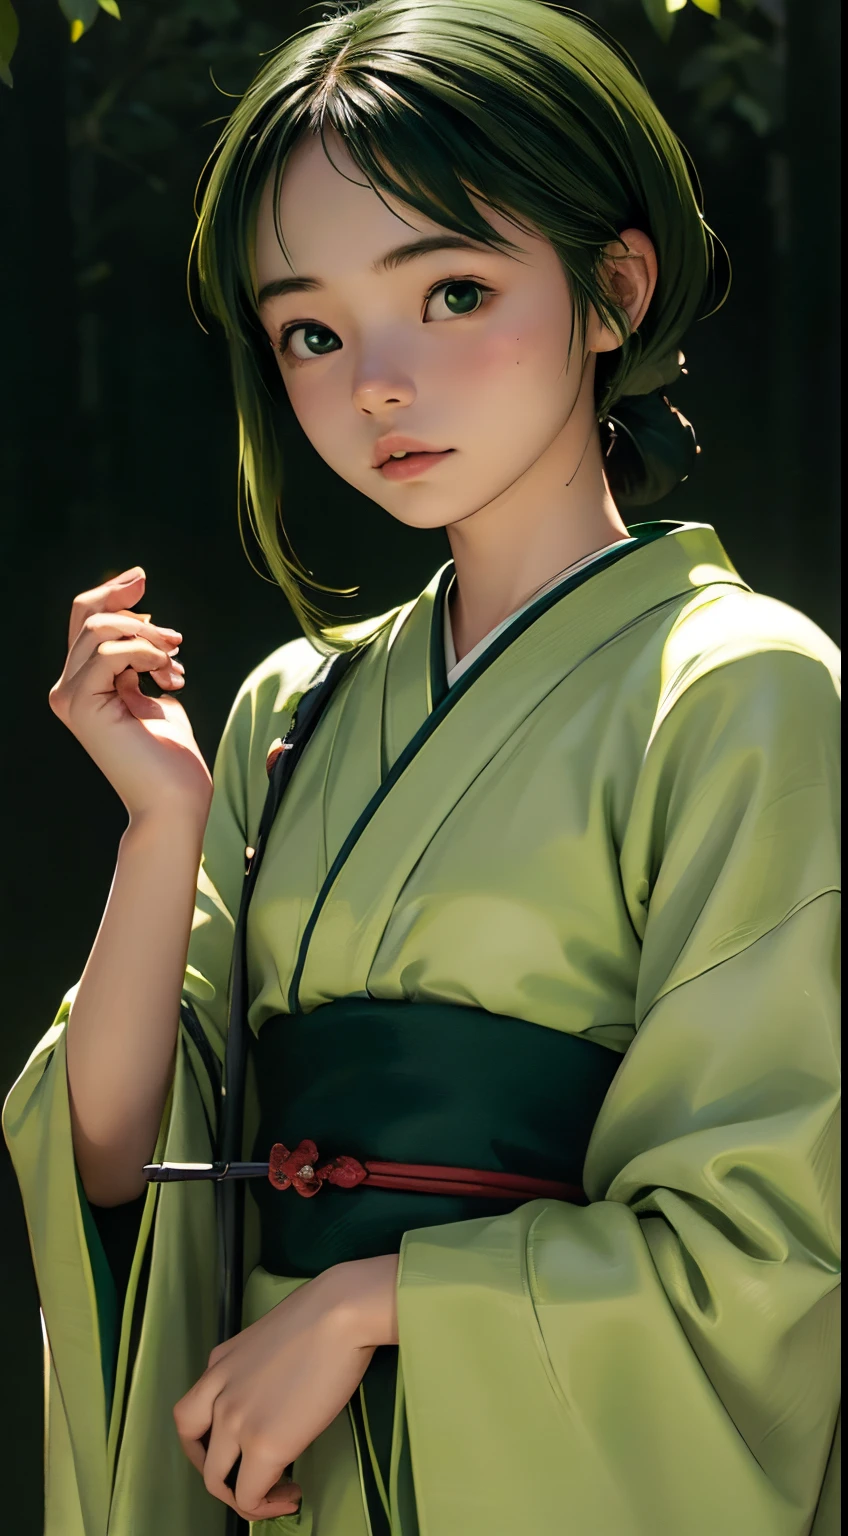 (((Grüne Welt:1.3)))、beste Qualität, Tischplatte, hohe Auflösung, (((1Mädchen in))), 16 Jahre alt,(((Augen sind grün:1.3)))、Yamato Nadeshiko trägt einen wunderschönen Kimono、((12 Einfach、traditionelles Junihitoe)), Tindall-Effekt, Realistisch, Schattenstudio,Ultramarinblaue Beleuchtung, zweifarbige Beleuchtung, (Hochdetaillierte Skins: 1.2)、Helle Beleuchtung、dunkle Beleuchtung、 Digital SLR, Foto, hohe Auflösung, 4K, 8K, Hintergrundunschärfe,Wunderschön ausblenden、Grüne Welt